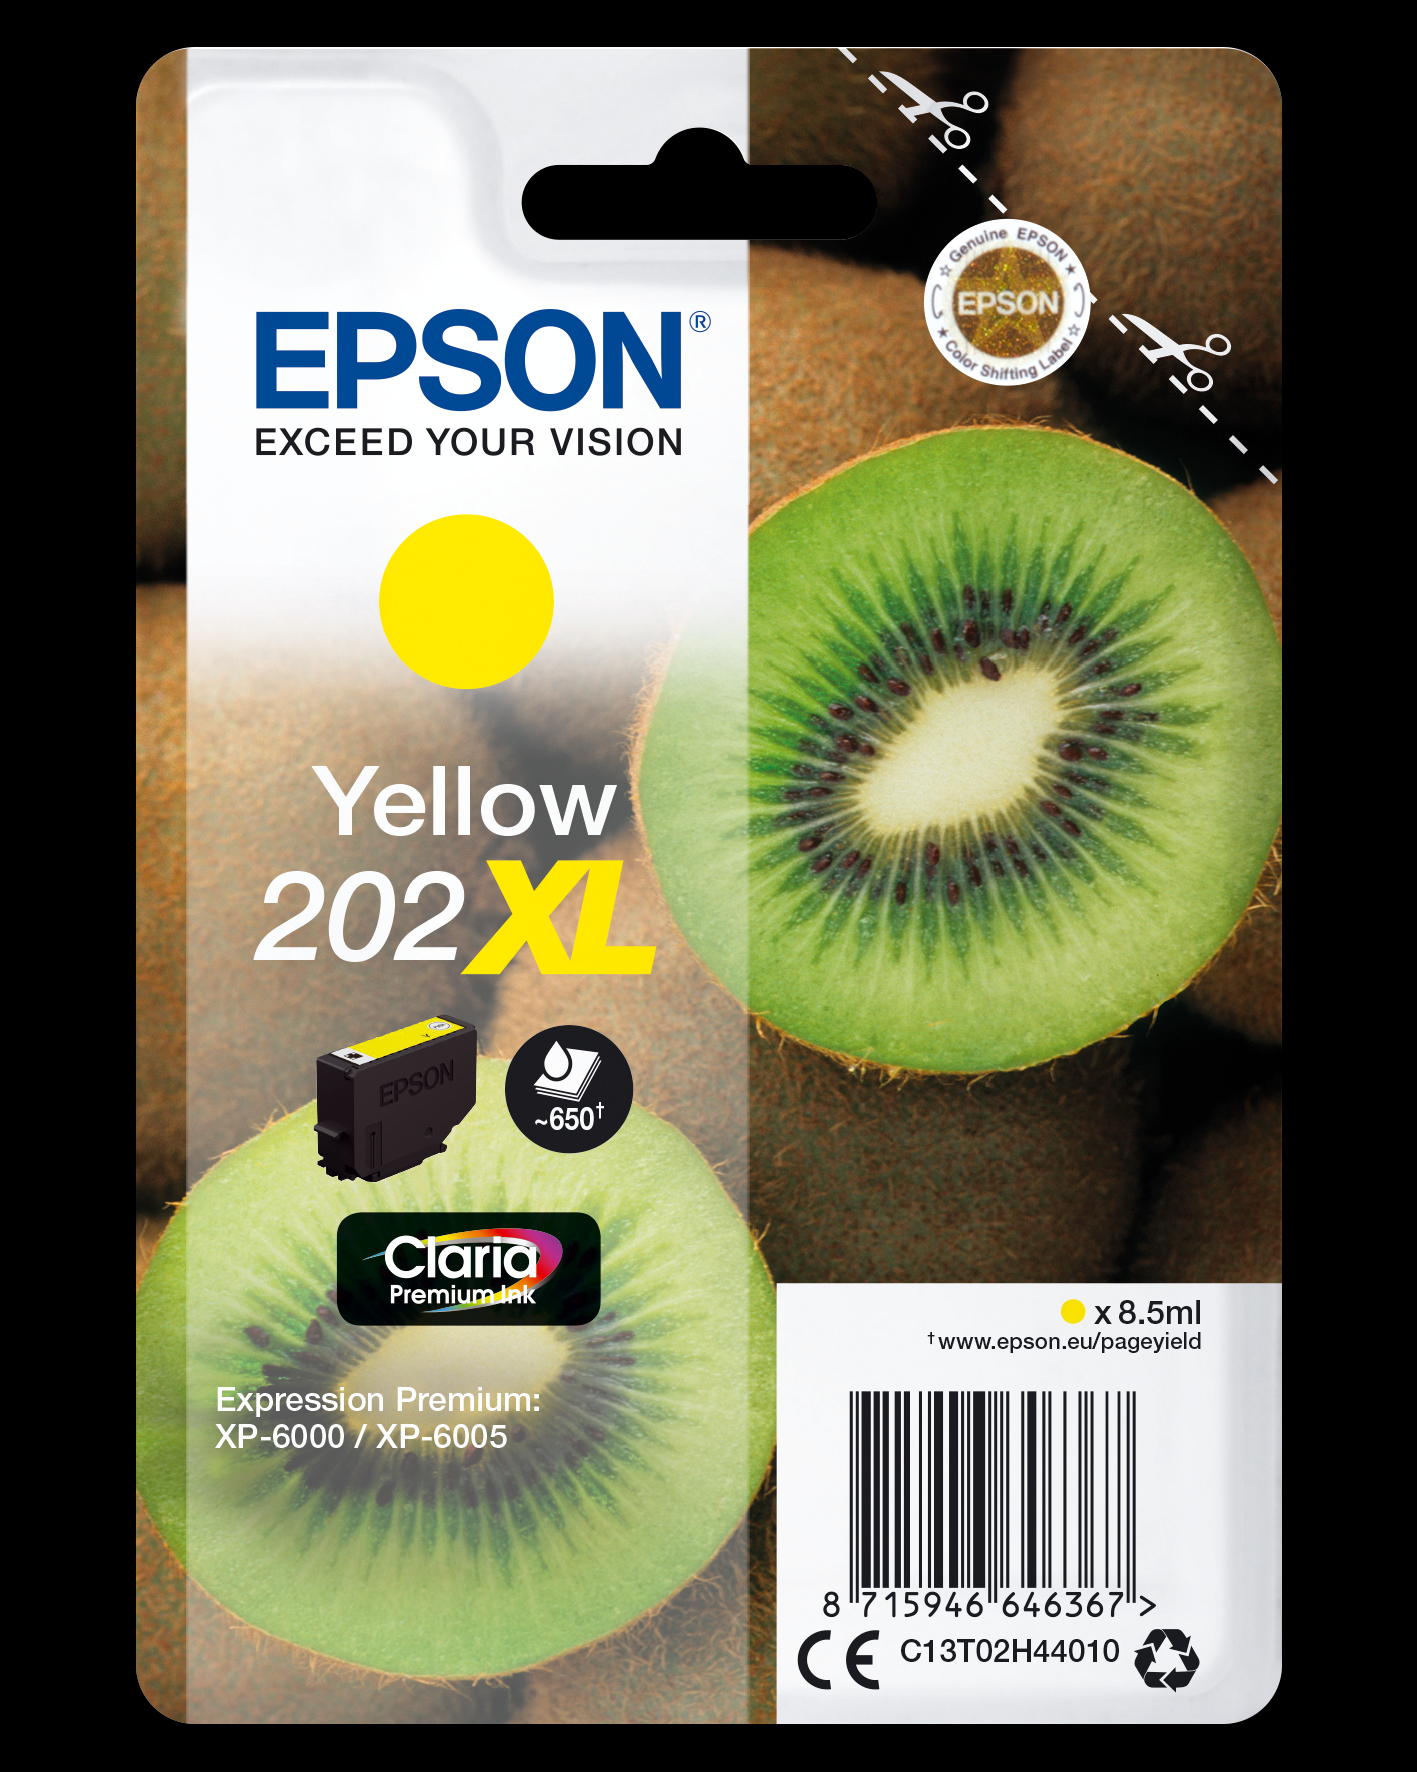 Yellow 202xl Claria Premium Ink C13t02h44010 - WC01